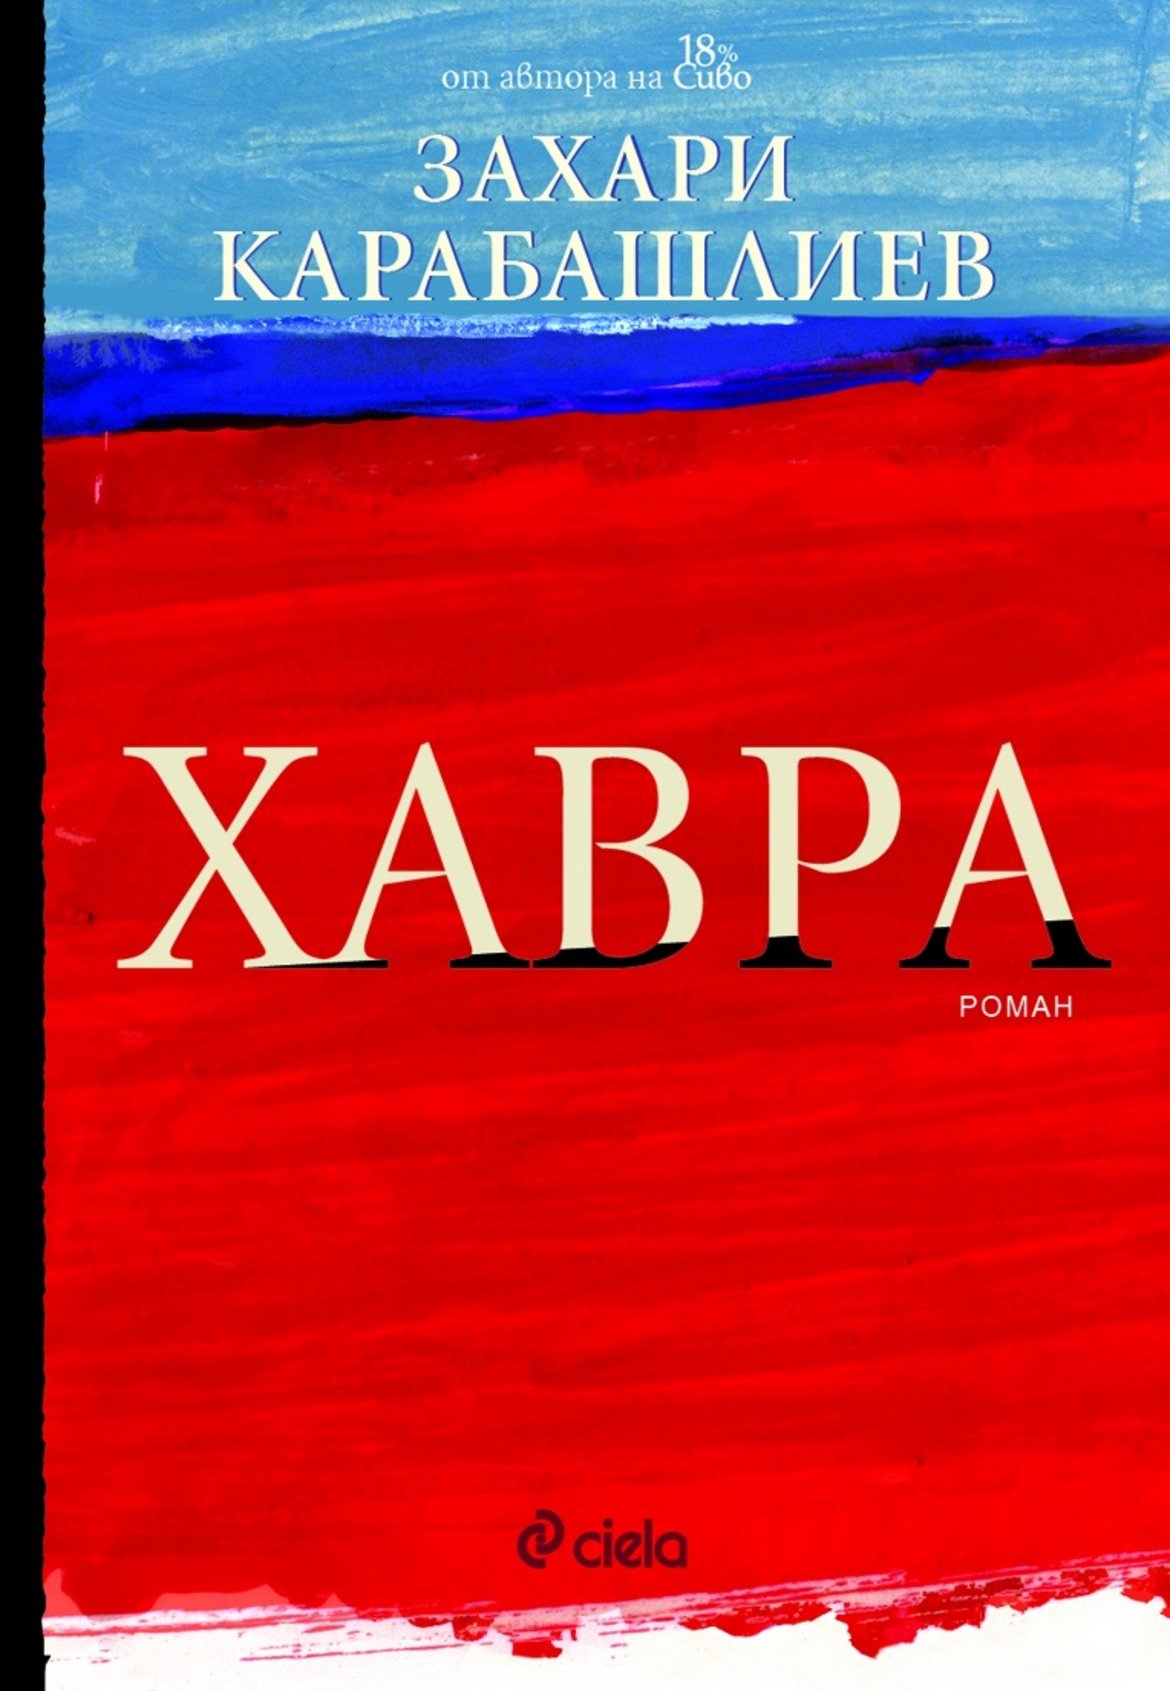 "Хавра" от Захари Карабашлиев

Романът разказва за български емигрант, който се връща в родната Варна след години в САЩ. Довела го е лична трагедия, зад която може би стои много повече от случайност. Докато разплита пъзела, той се запознава с възрастна жена, чрез която се докосва до една "история в историята" - разказ за млада рускиня, която се влюбва в опърничав американец с важна роля за историята на България.

"Много ми харесва и съм приятно изненадана, че български автор може да пише по такъв начин. Определено по-интересно ми е действието в настоящето, тъй като не харесвам руски исторически елементи."